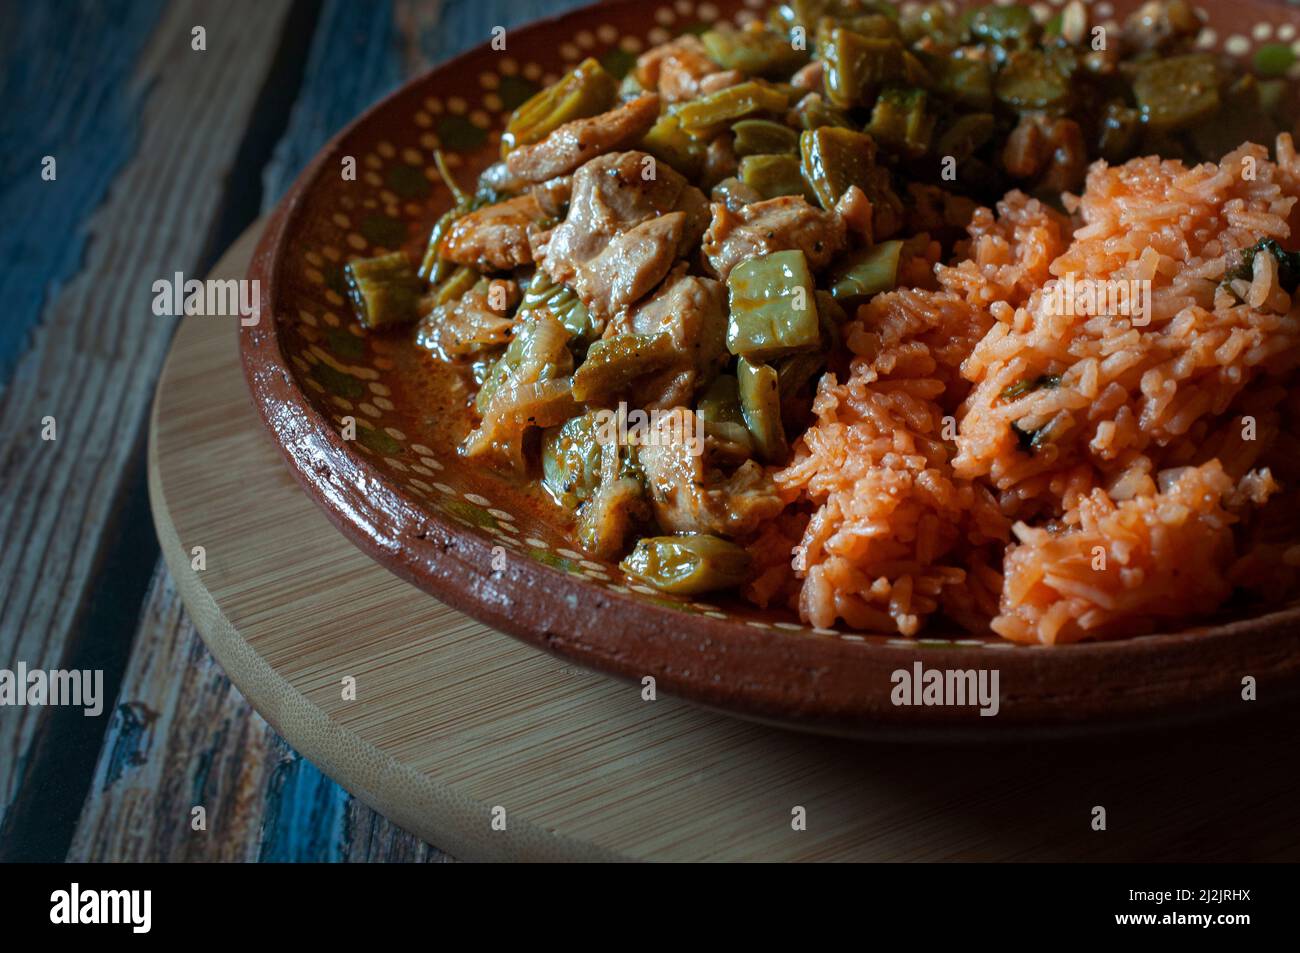 Porc. Cuisine mexicaine, poulet aux nopales et riz mexicain aux tortillas de maïs faites à la main sur une plaque de boue ou d'argile, sur une planche à découper ronde en bois. Banque D'Images